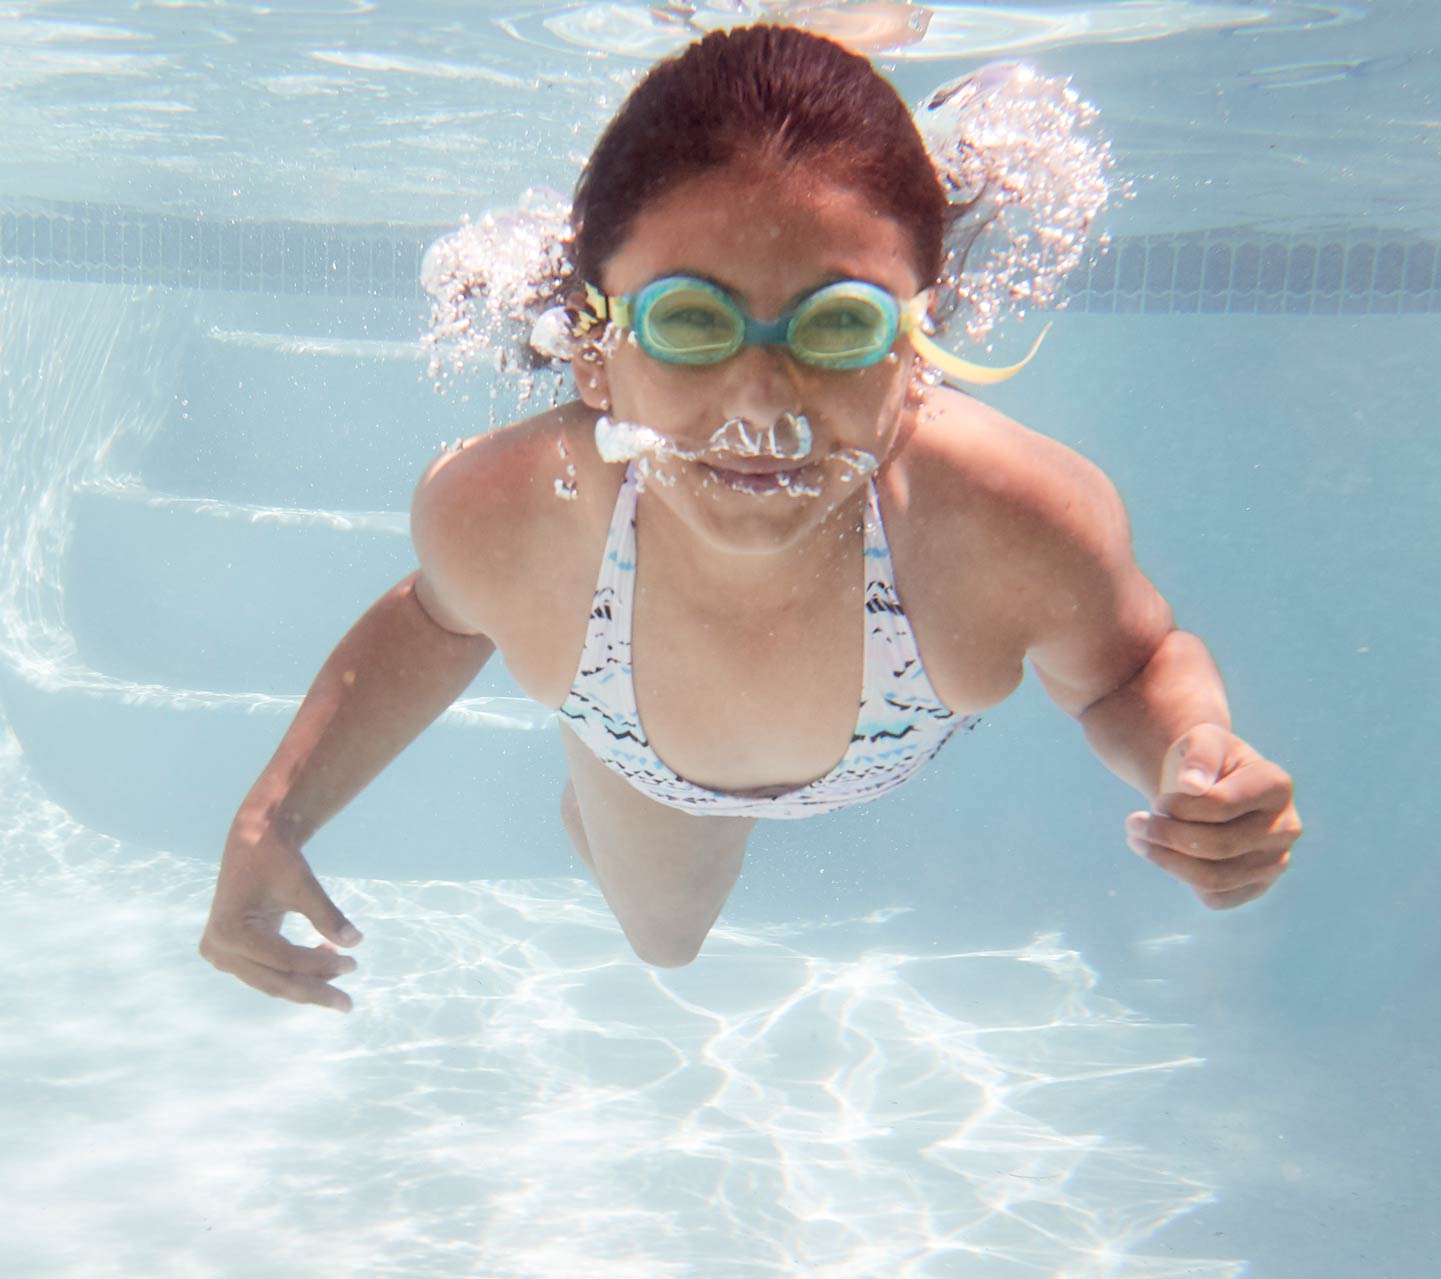 Criança nadando debaixo da água com um implante da Cochlear